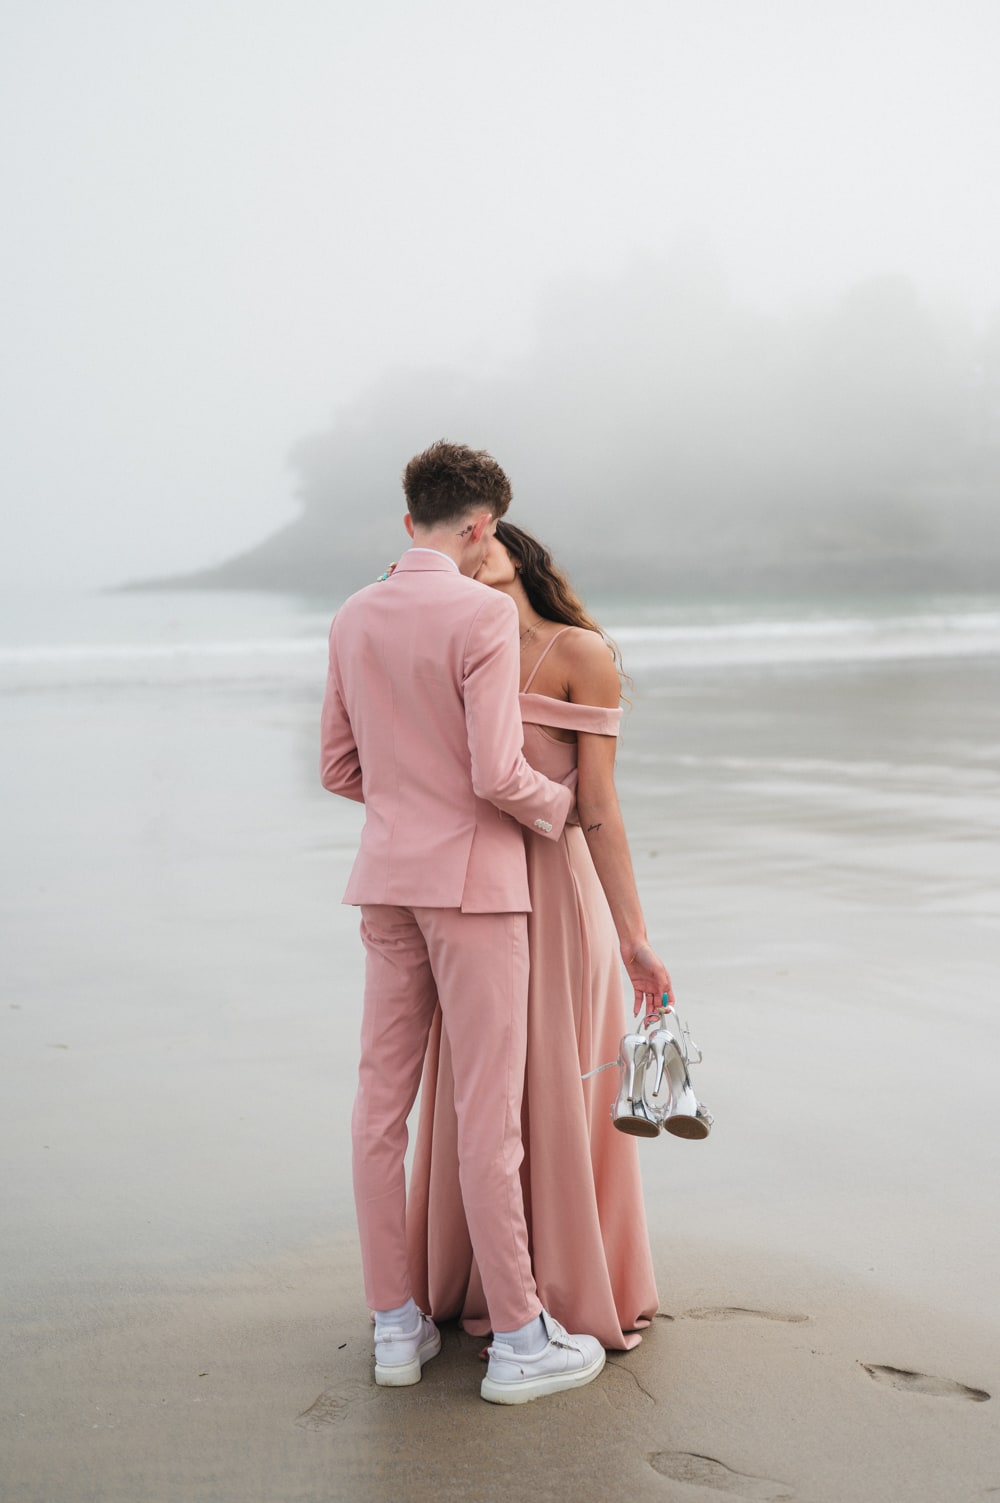 Photographe couple séance photo sur la plage